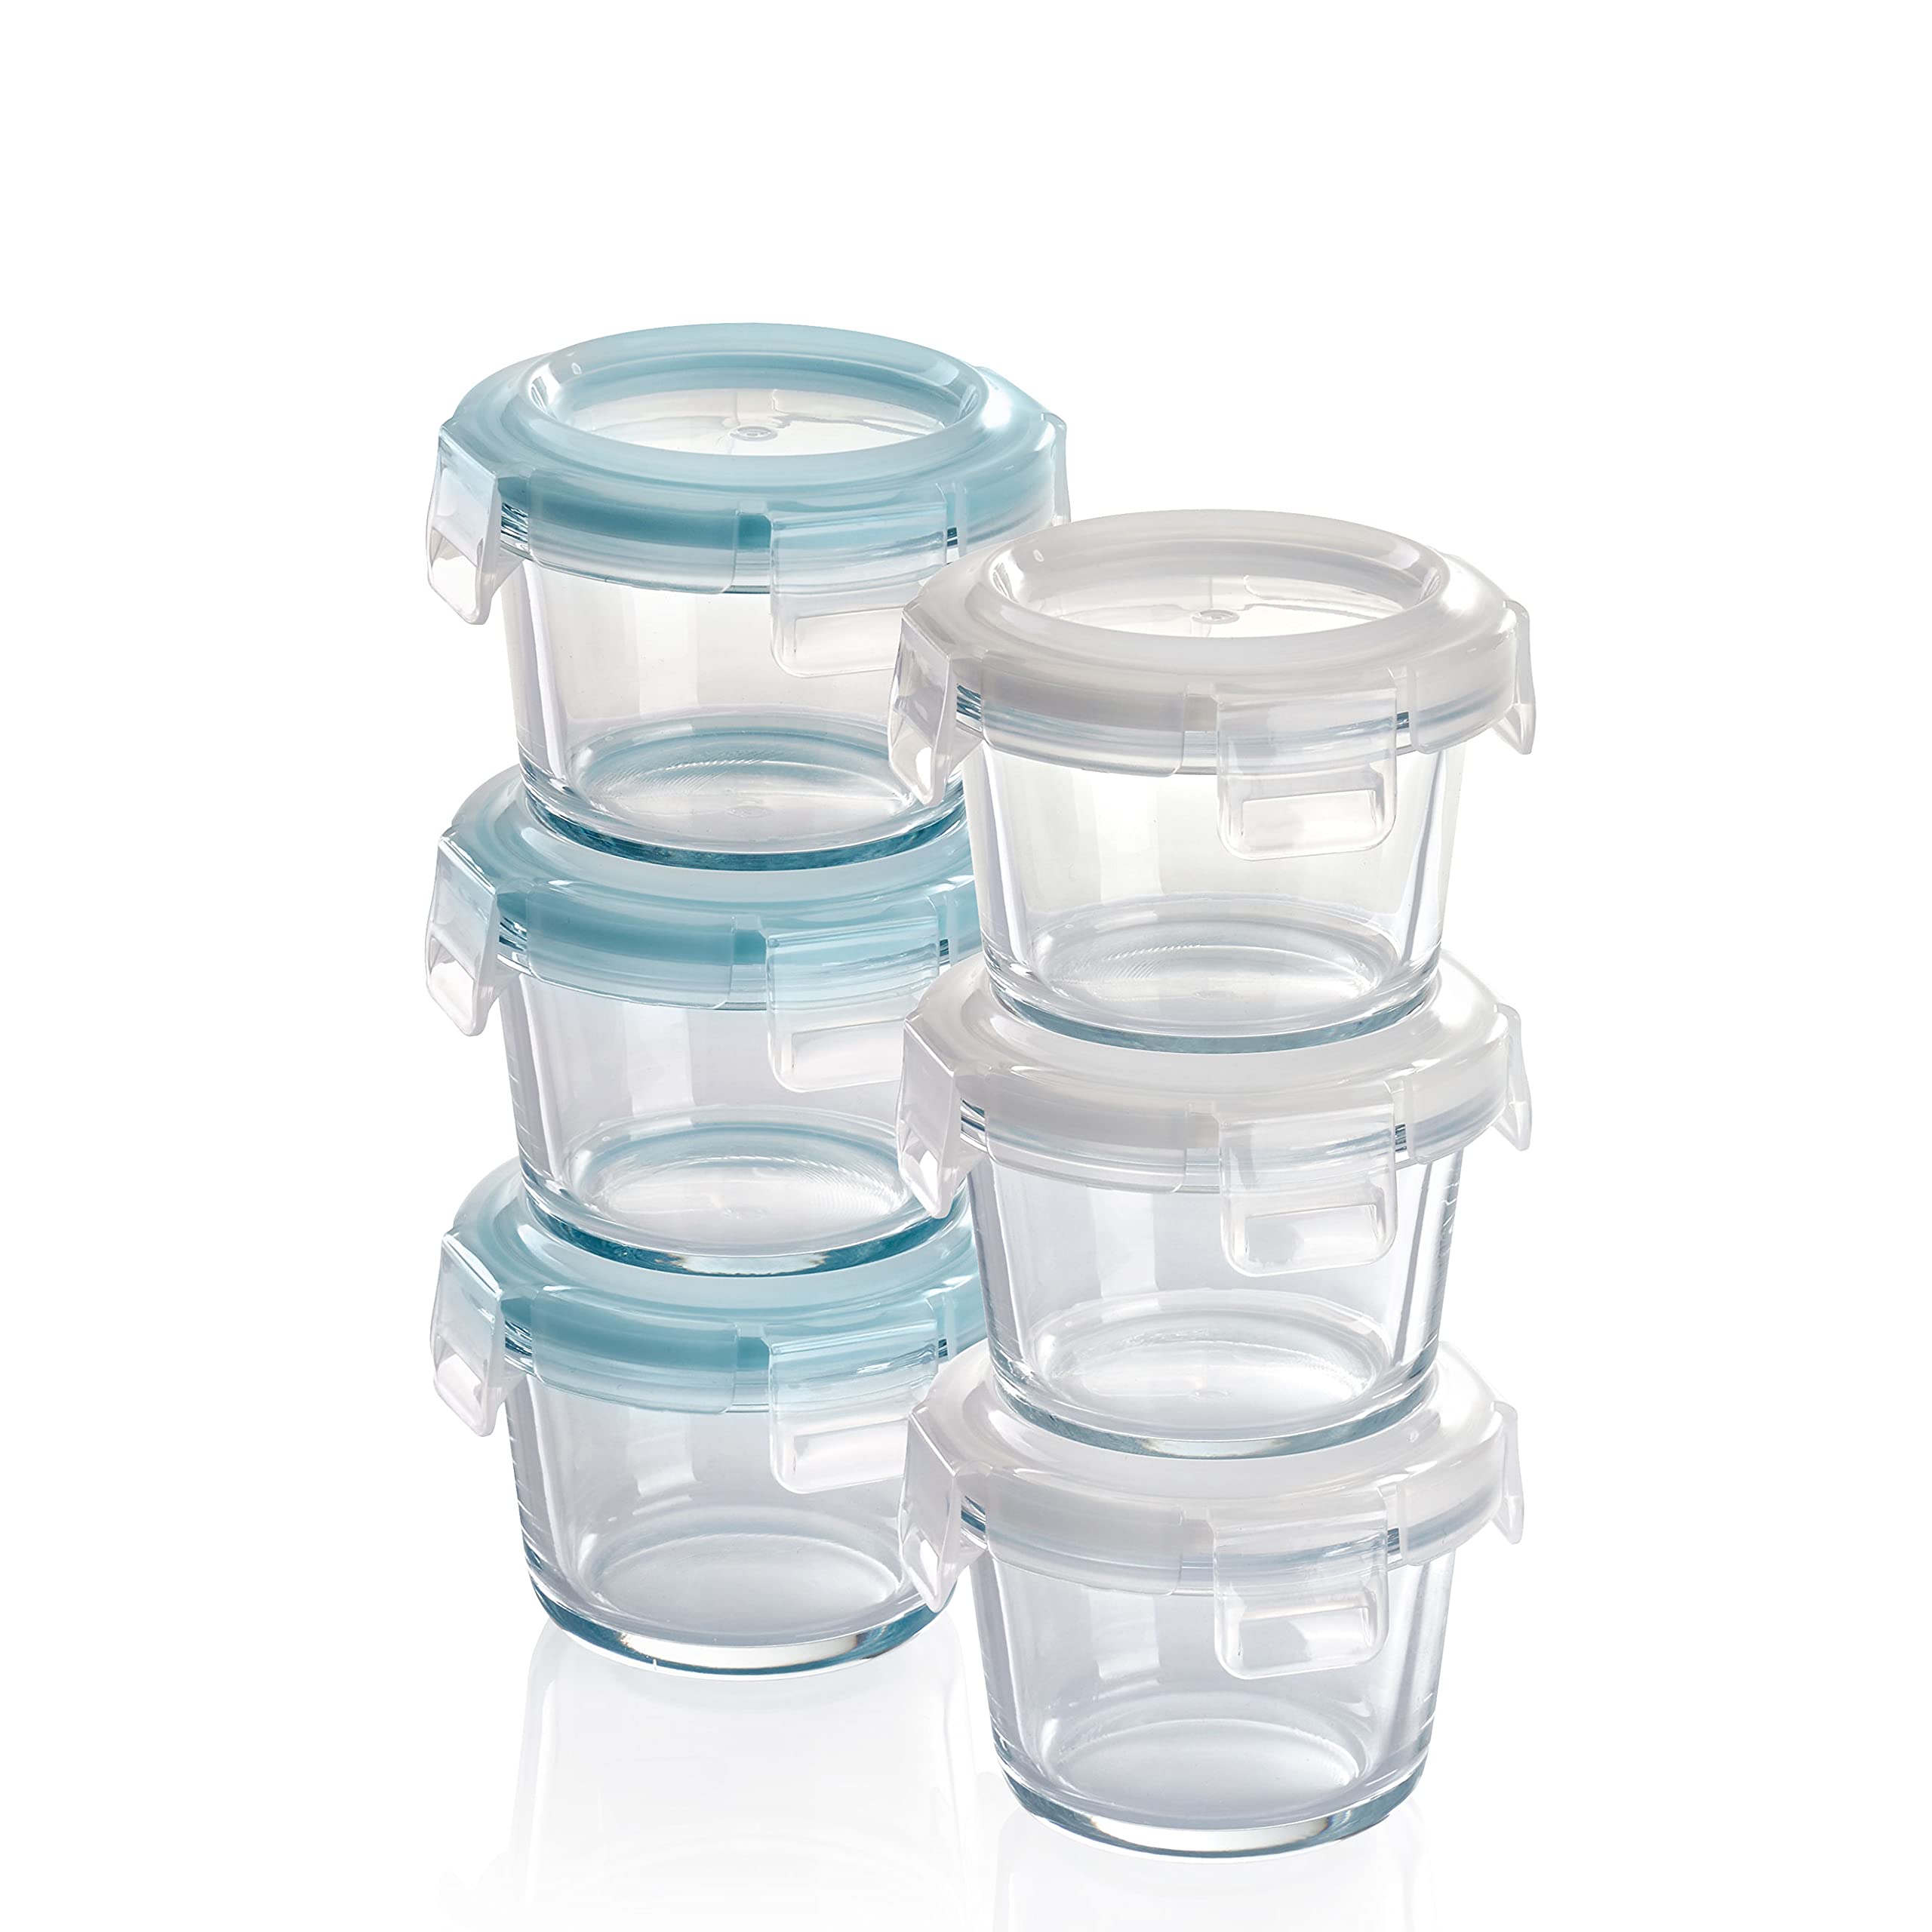 Grizzly Mini Glas Frischhaltedosen, Set 6X 130 ml, luftdicht, rund, Click-Verschluss, Idealer Behälter für Babybrei, Beikost und Dips